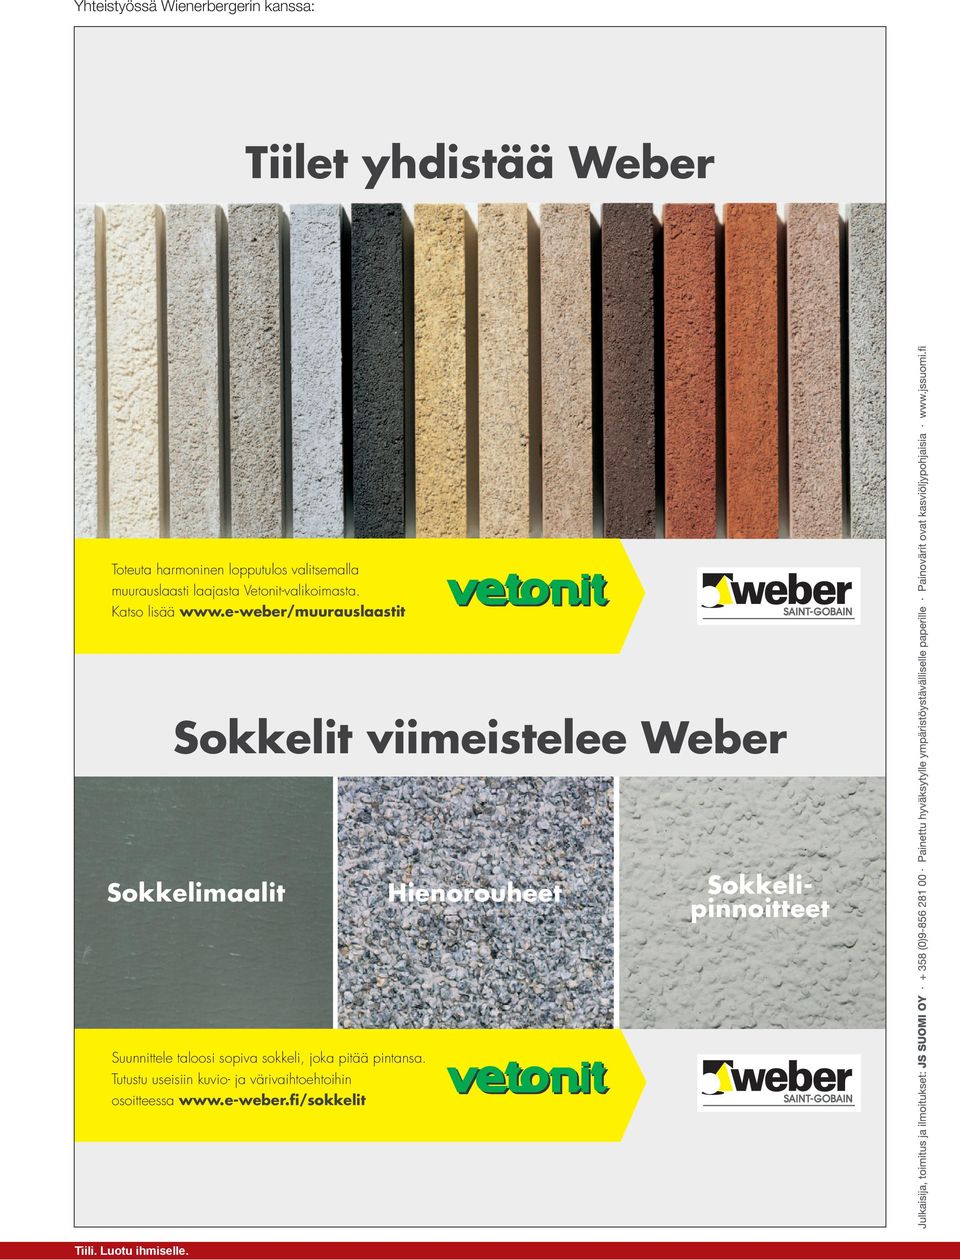 e-weber/muurauslaastit Sokkelit viimeistelee Weber Sokkelimaalit Hienorouheet Sokkelipinnoitteet Suunnittele taloosi